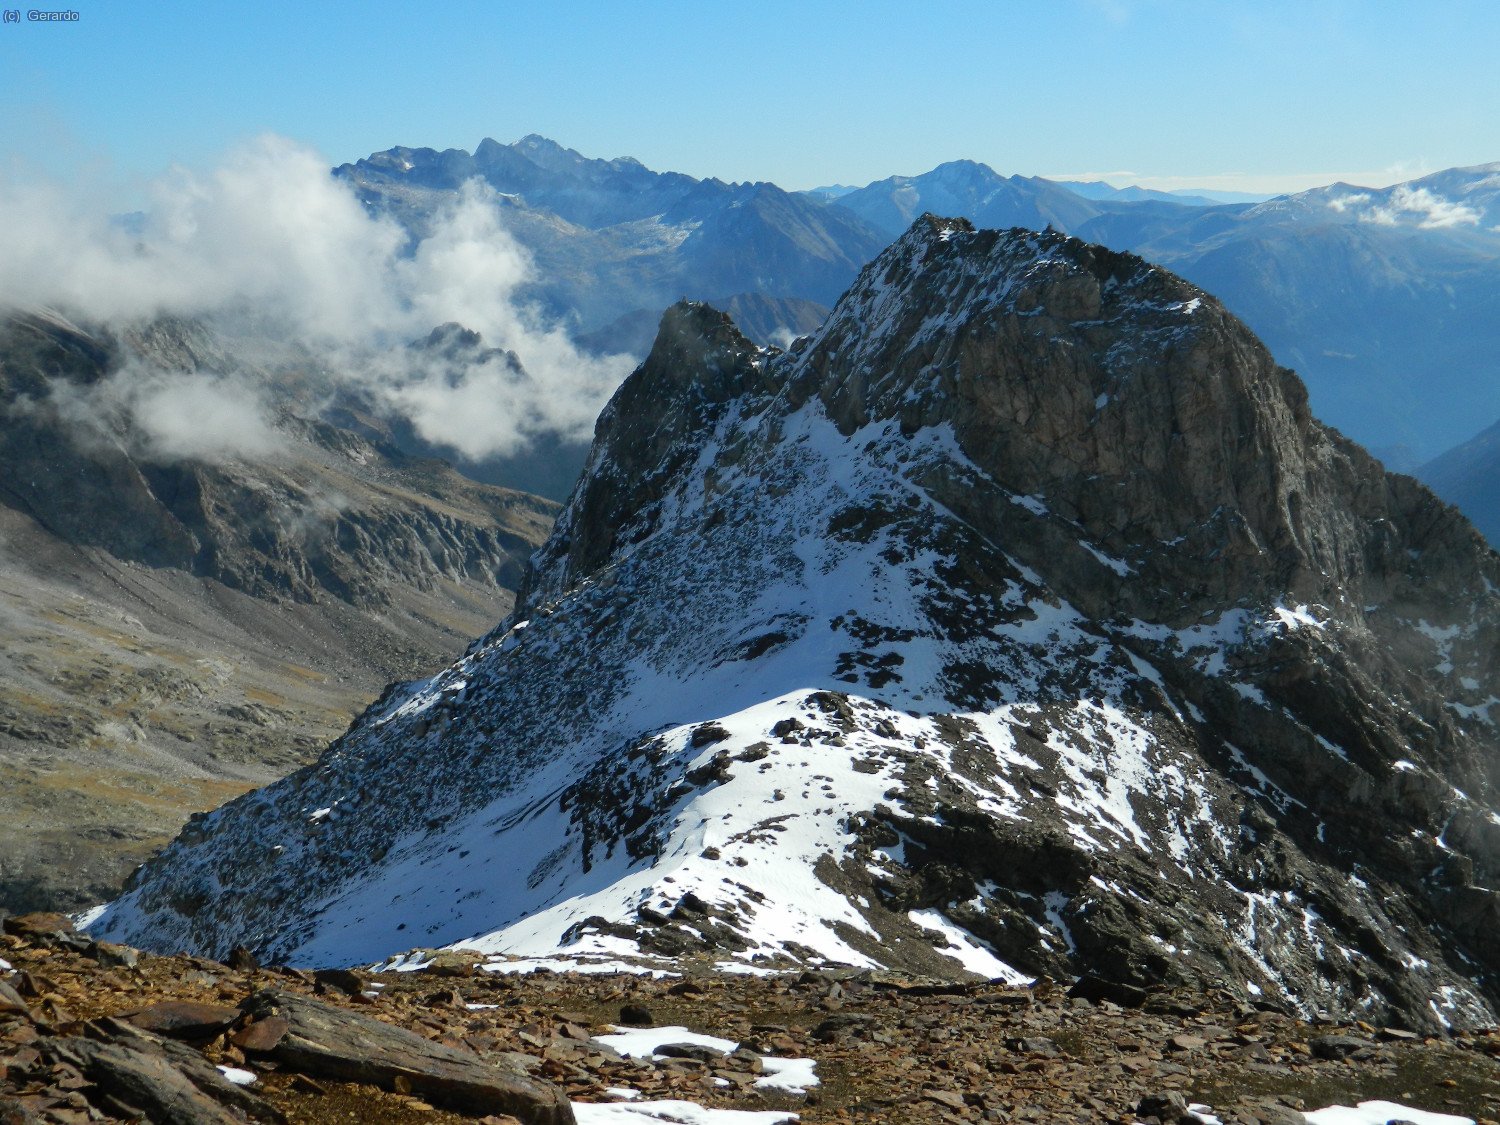 Sudeste. Maladetas-Aneto al fondo, Valliviernas más a la derecha, y en primer plano el Pico de Gías.